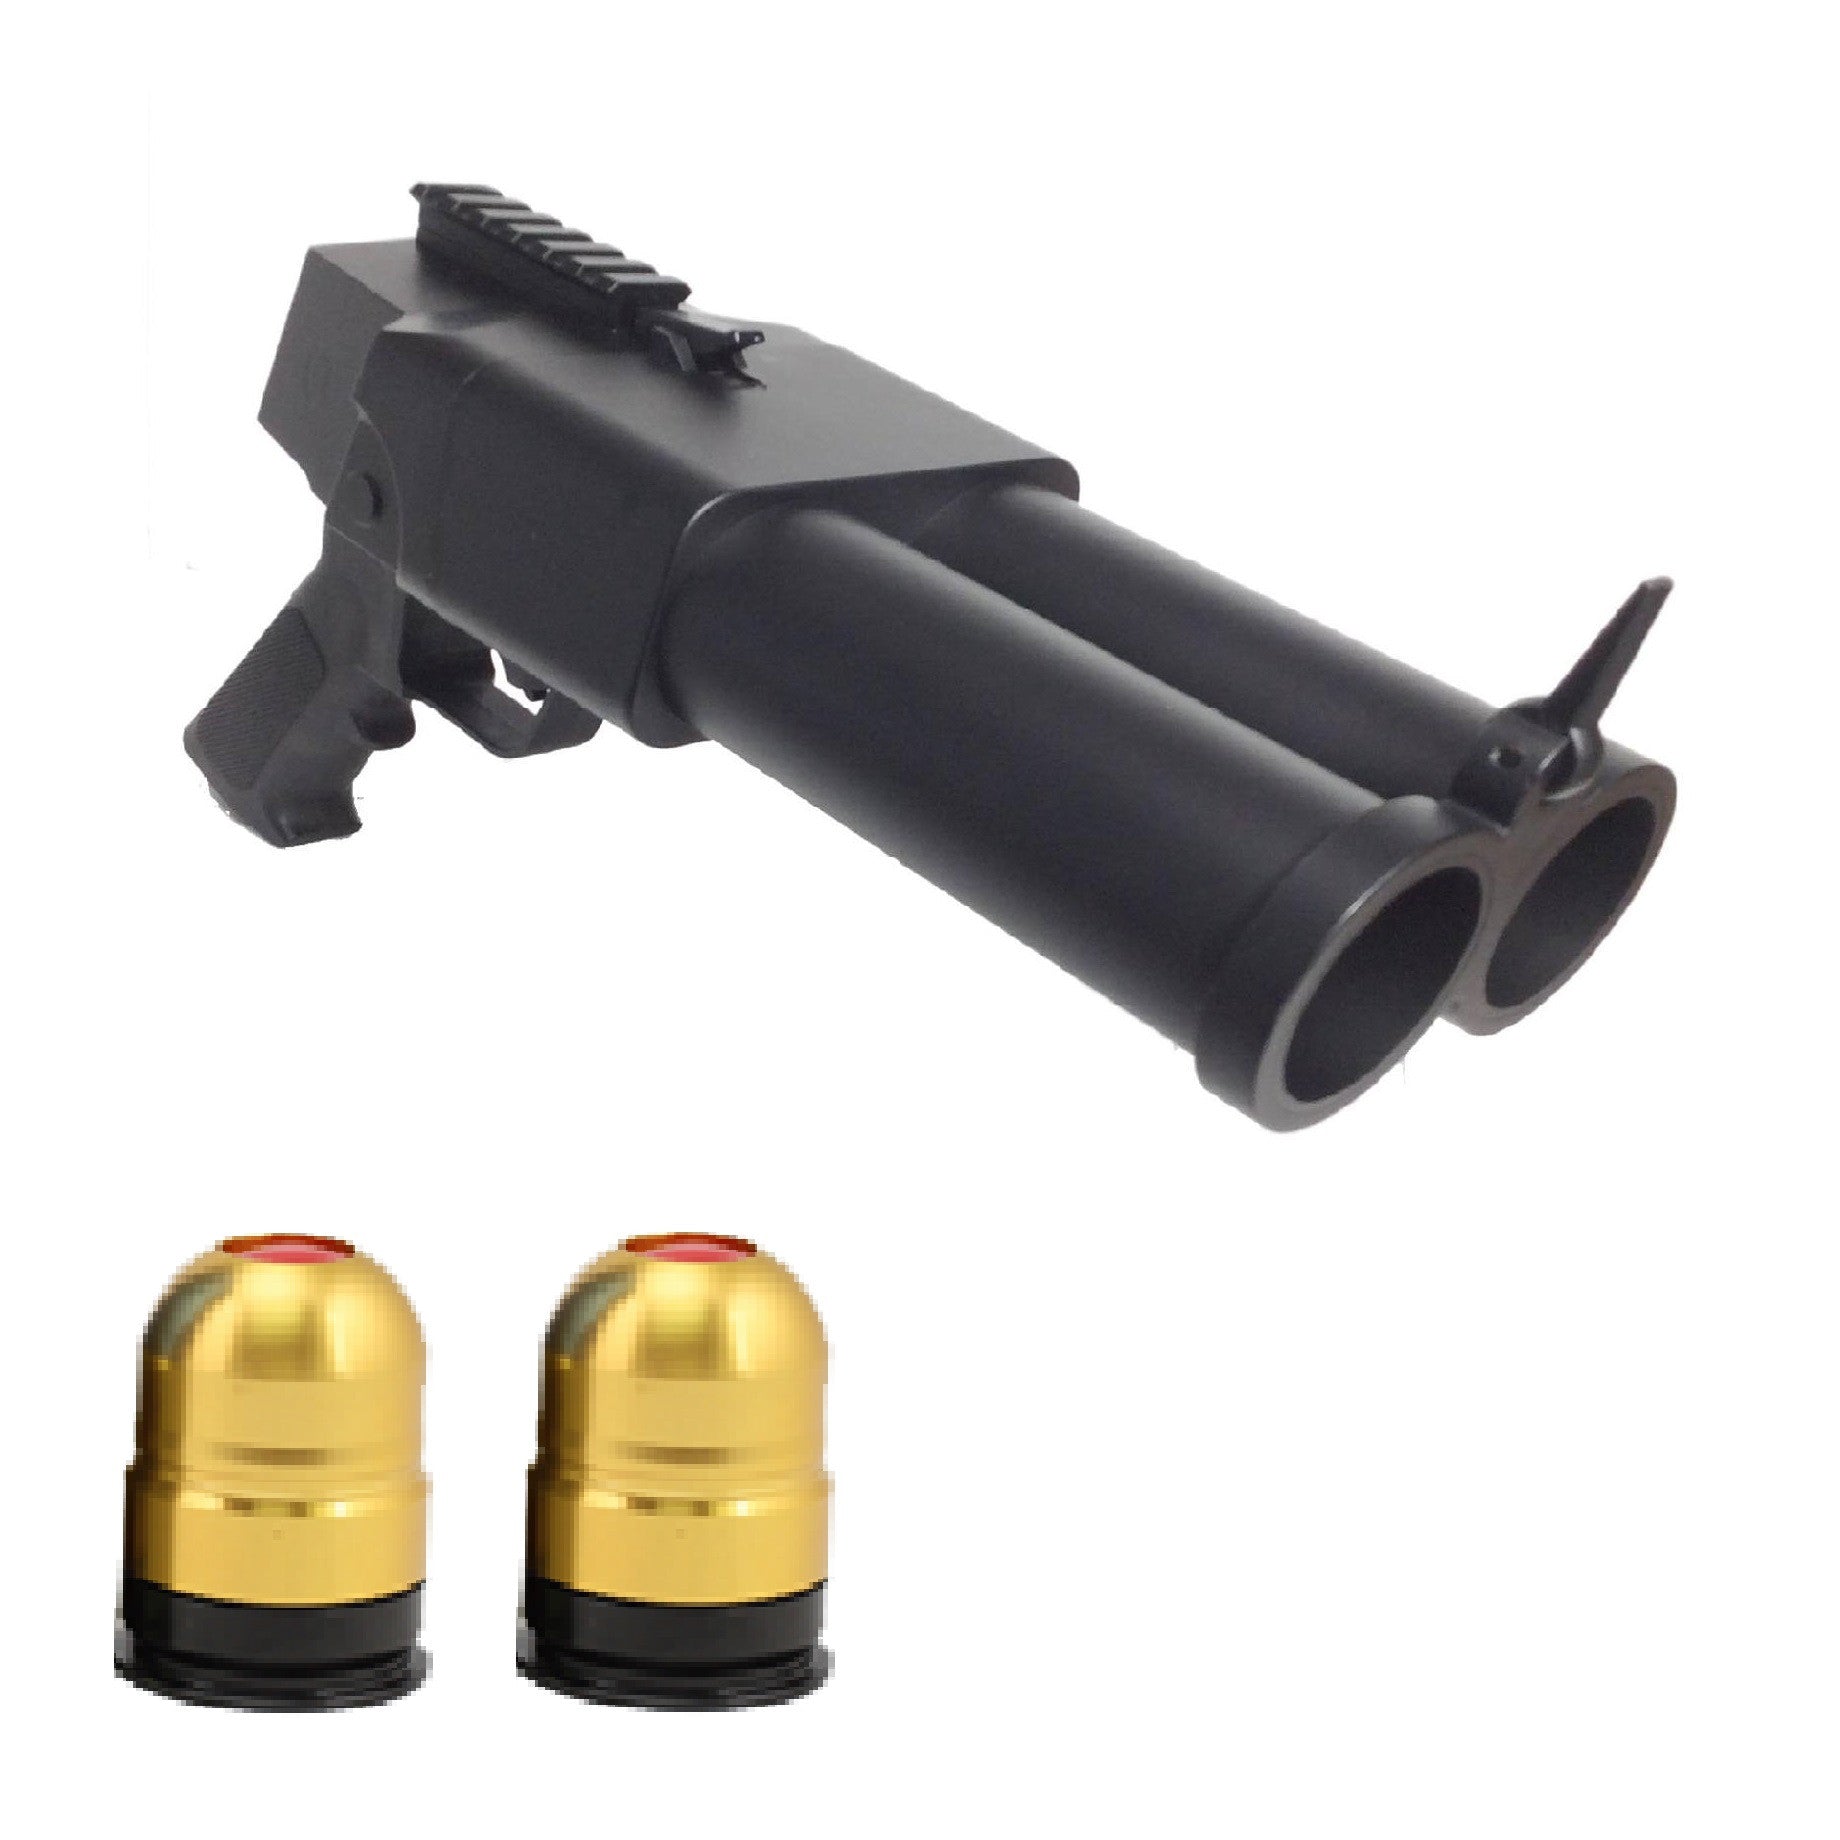 Double Barrel Pistol Grenade Launcher Package Deal w/ TWO Grenades!